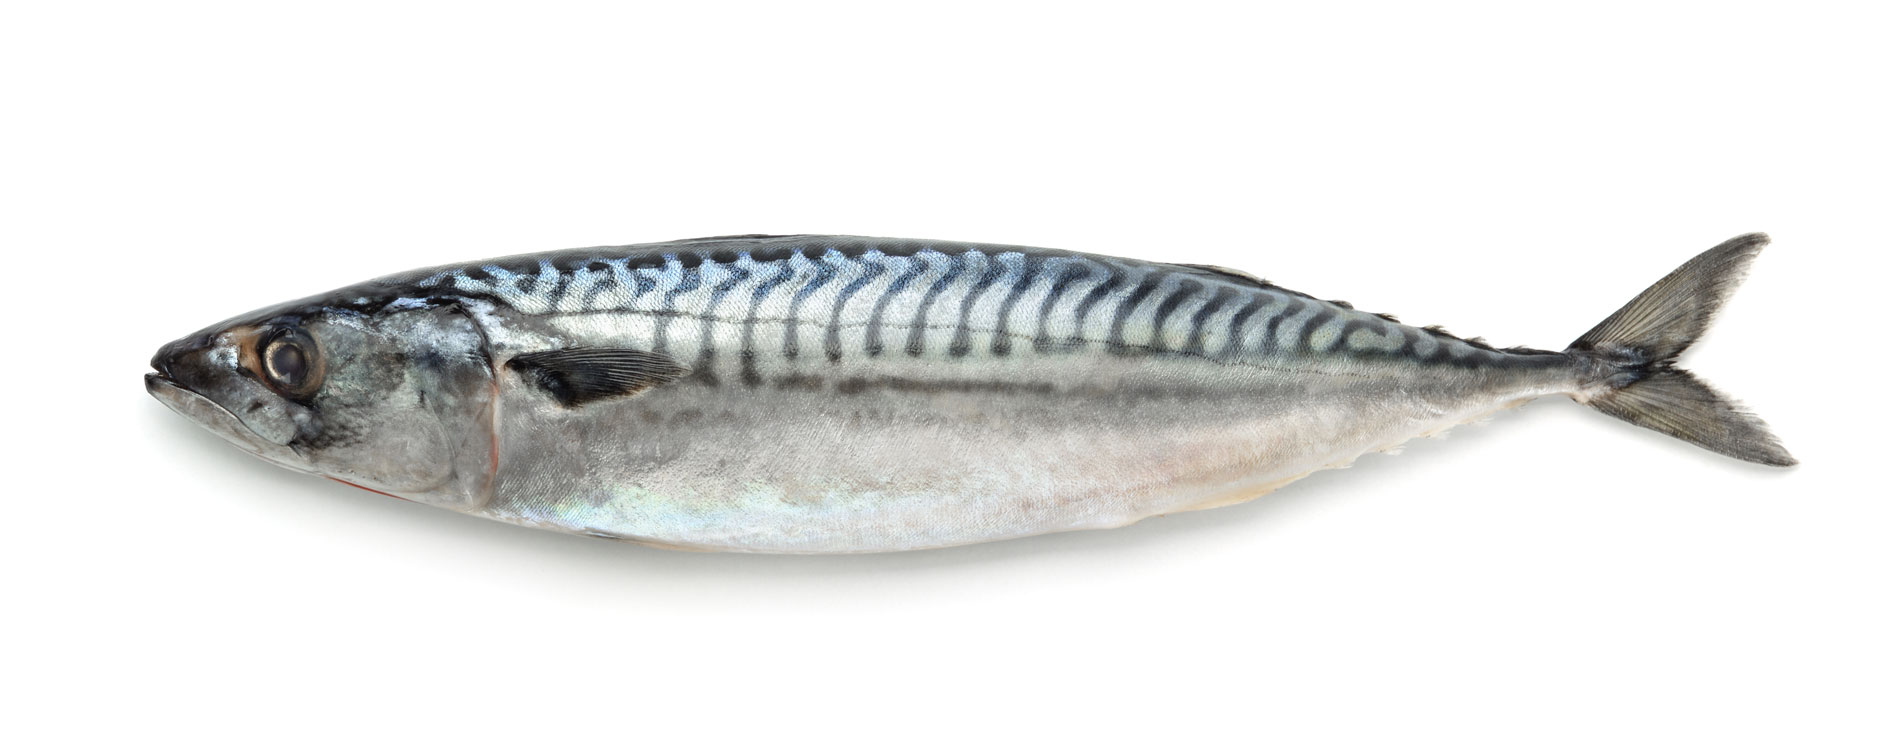 Скумбрия без воды. Скумбрия атлантическая макрель. Mackerel Fish скумбрия. Скумбрия 300-500 Эквадор. Скумбрия 200 400 н/р см вес.